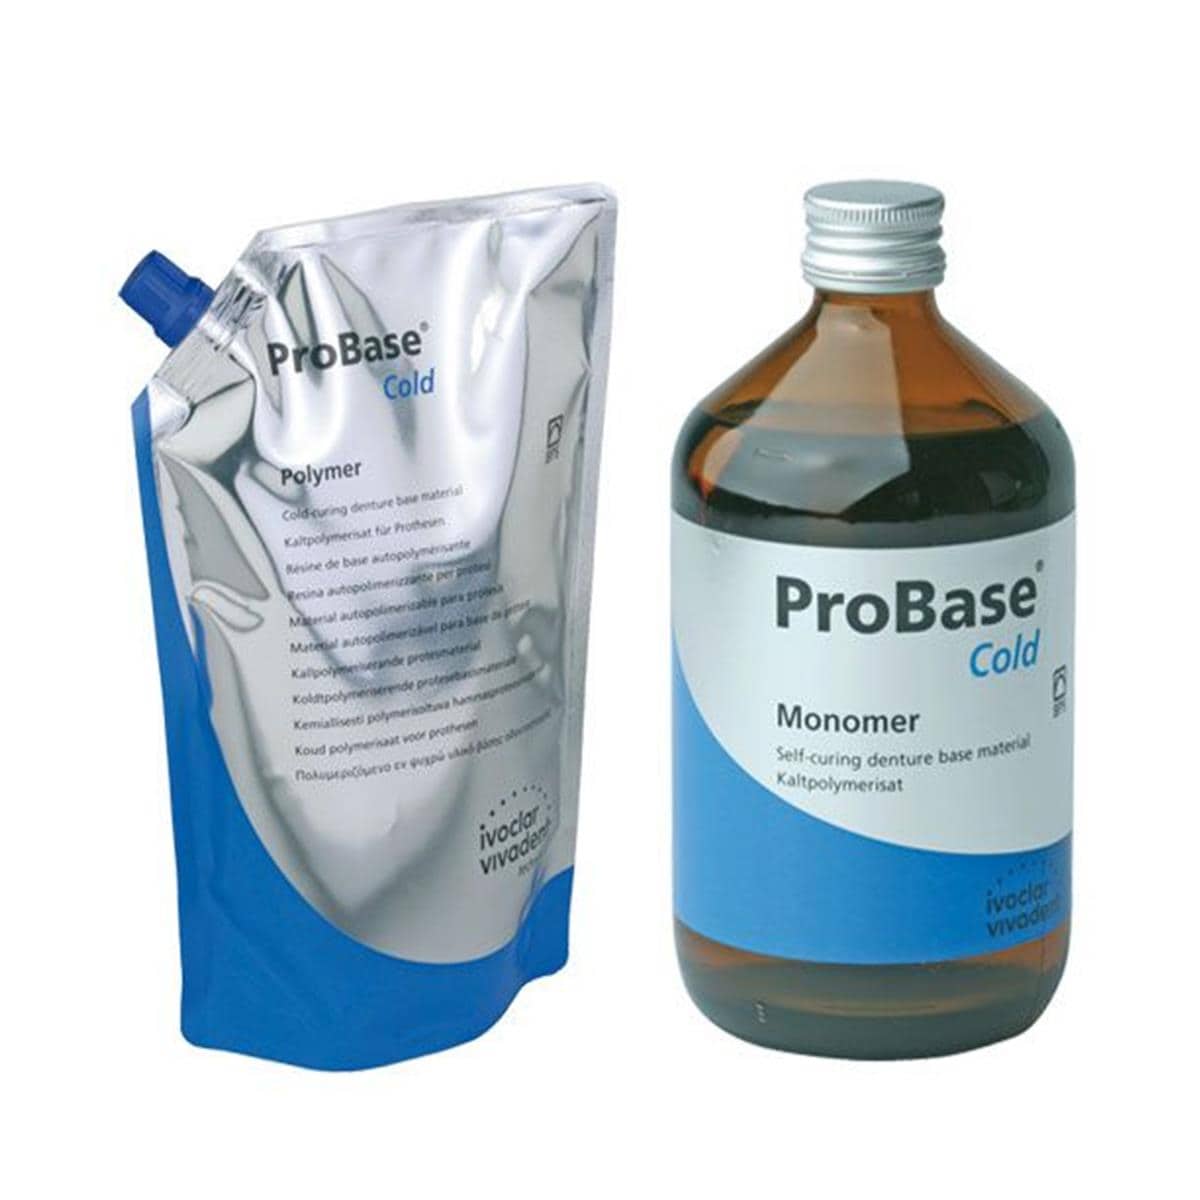 Probase Cold IVOCLAR - La portion de 1 kg + 500 ml - 36 PV